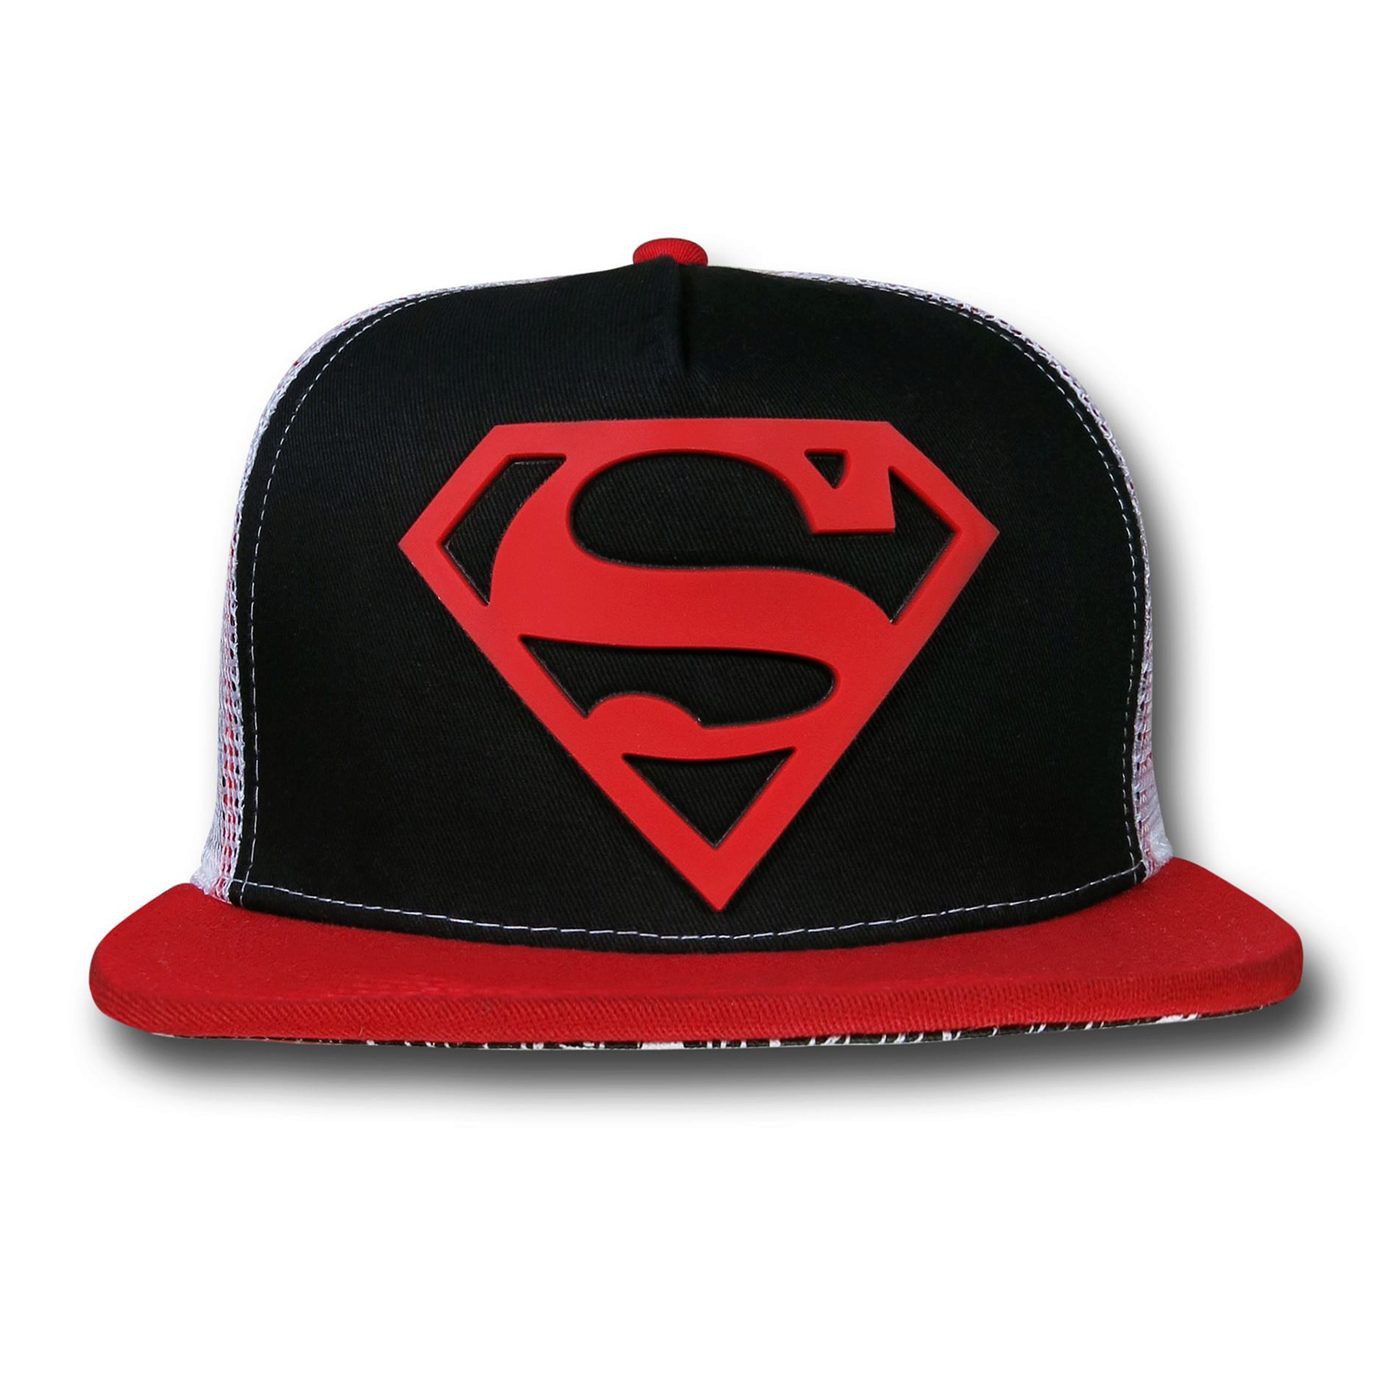 Superman Rubber Patch Sublimated Brim Cap